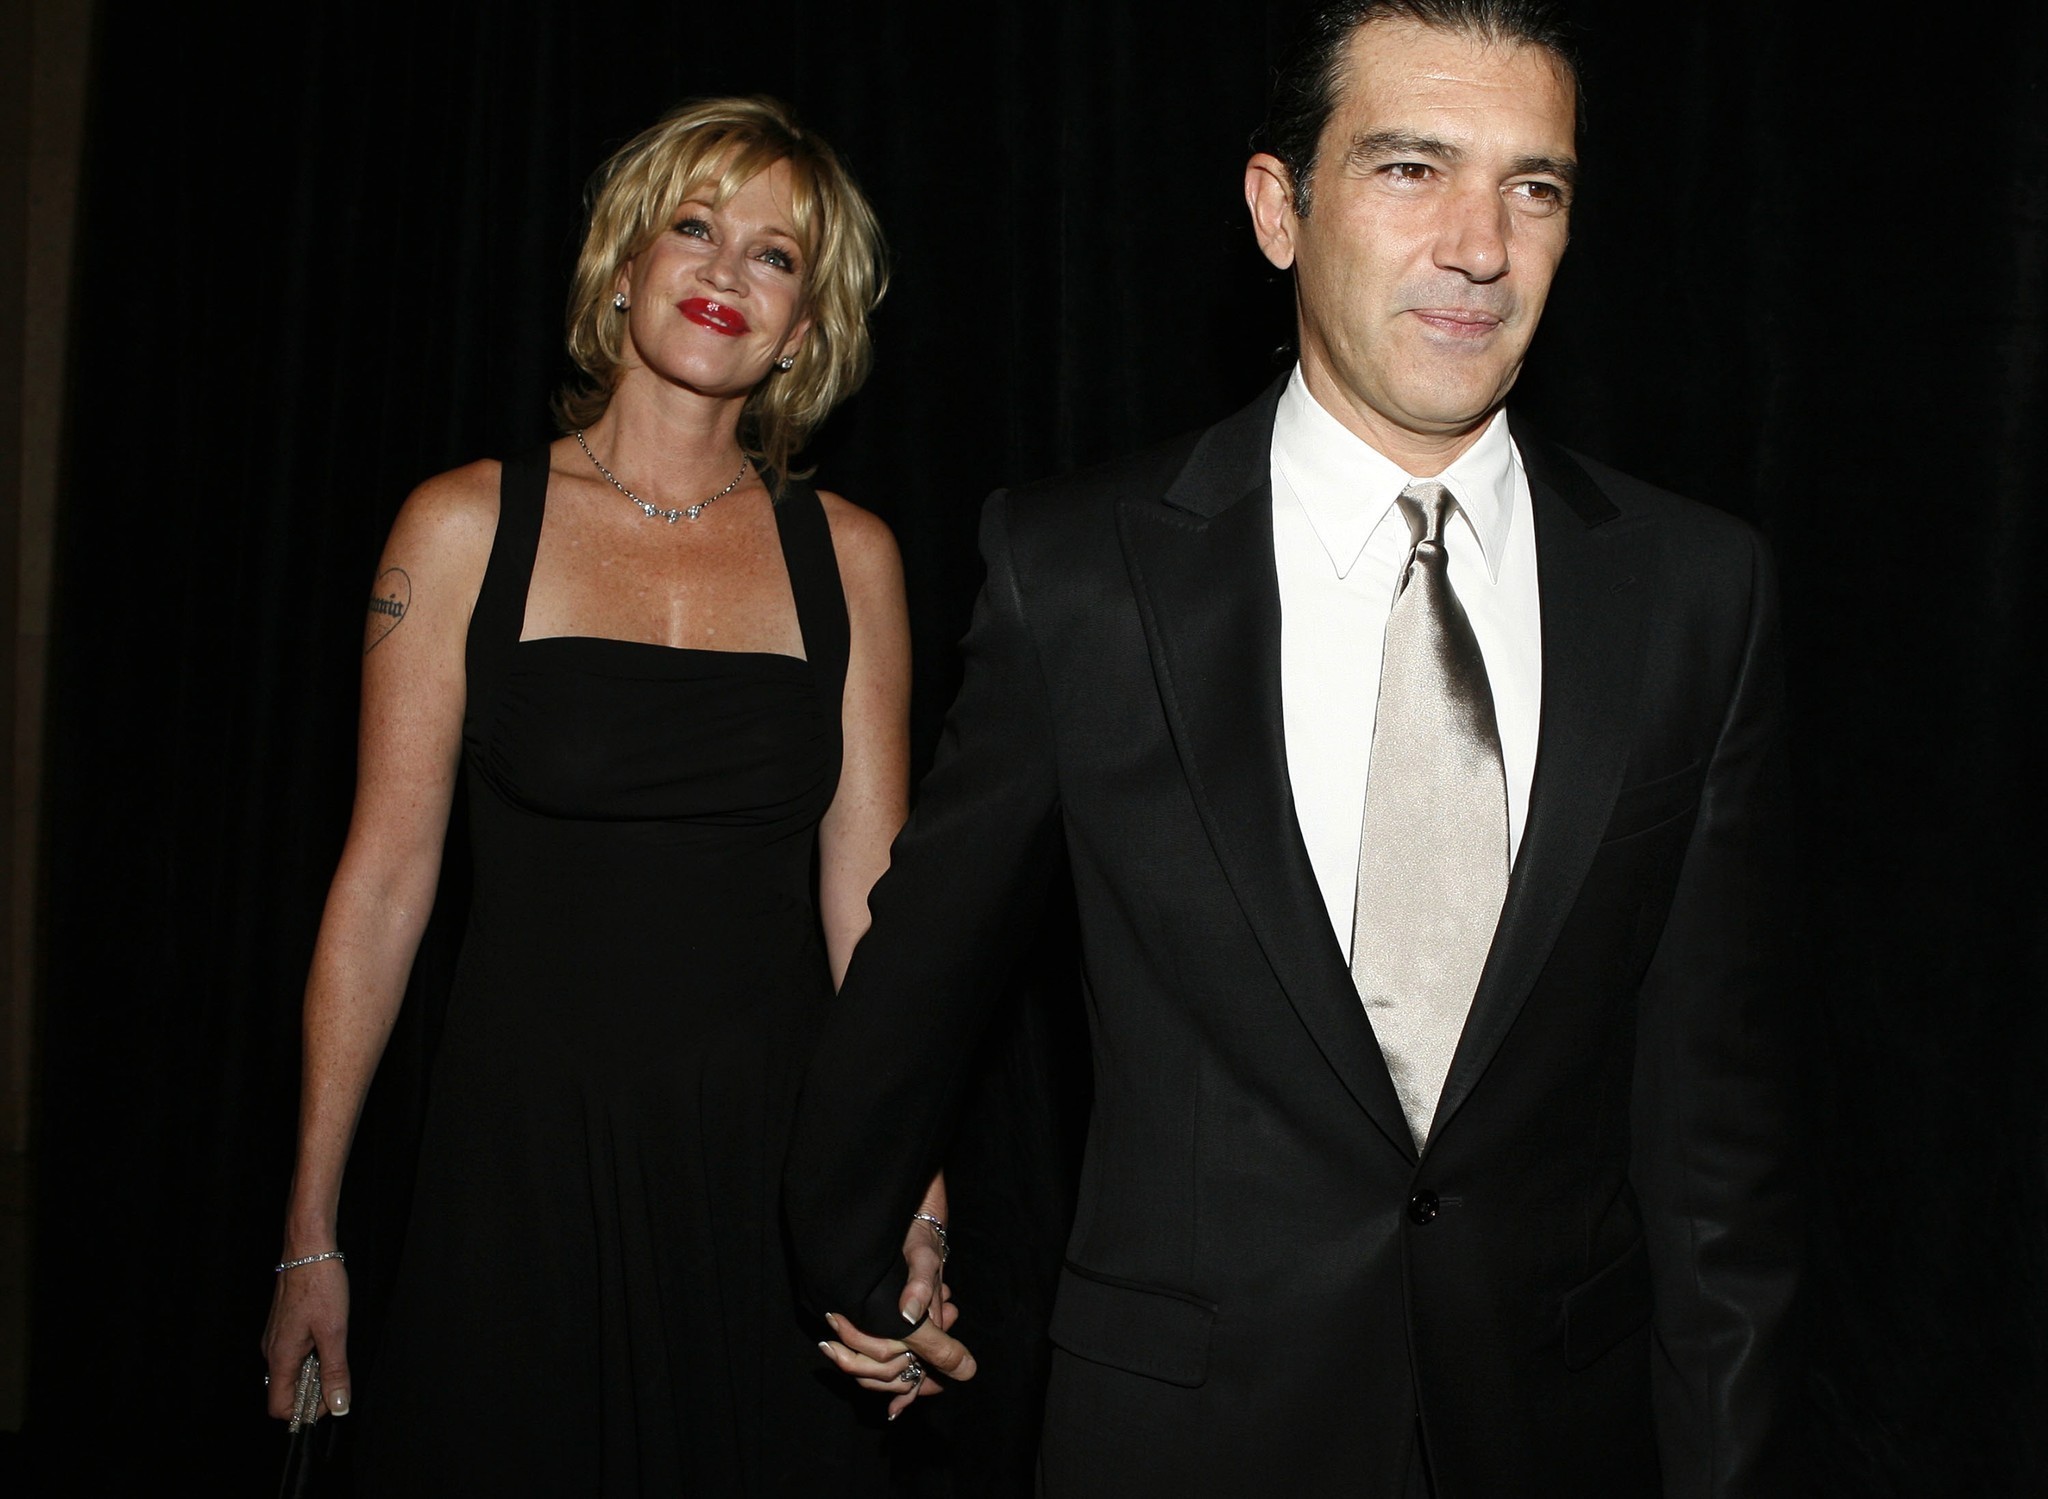 Melanie Griffith divorcing Antonio Banderas after 18-year marriage - LA Times2048 x 1499